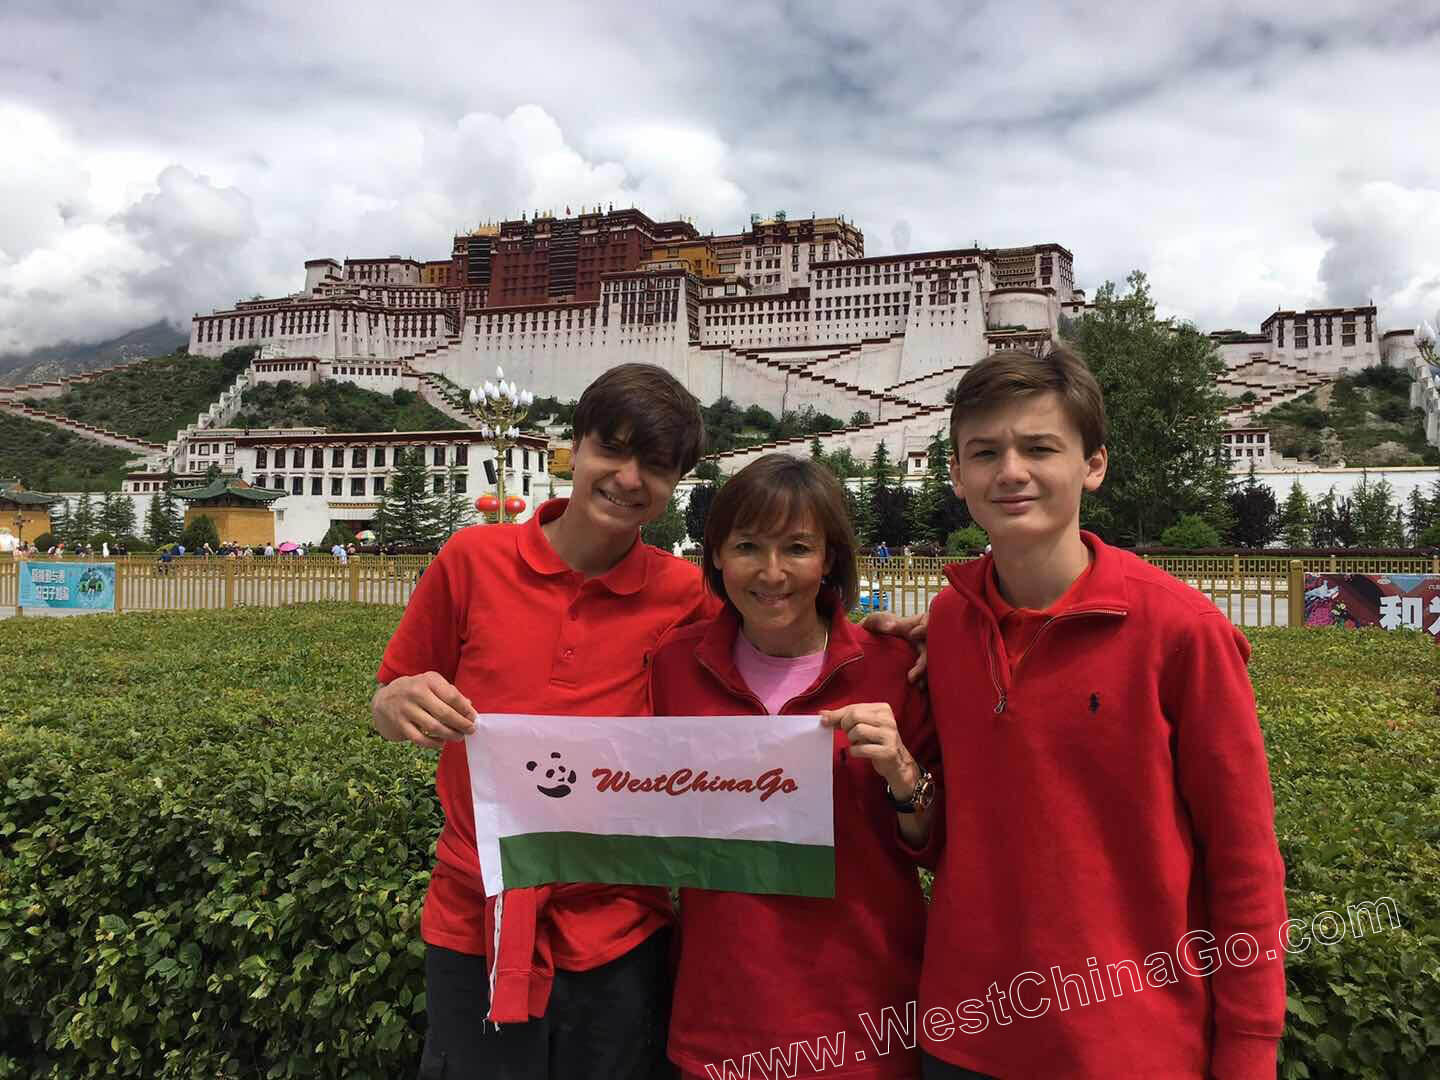 tibet tours